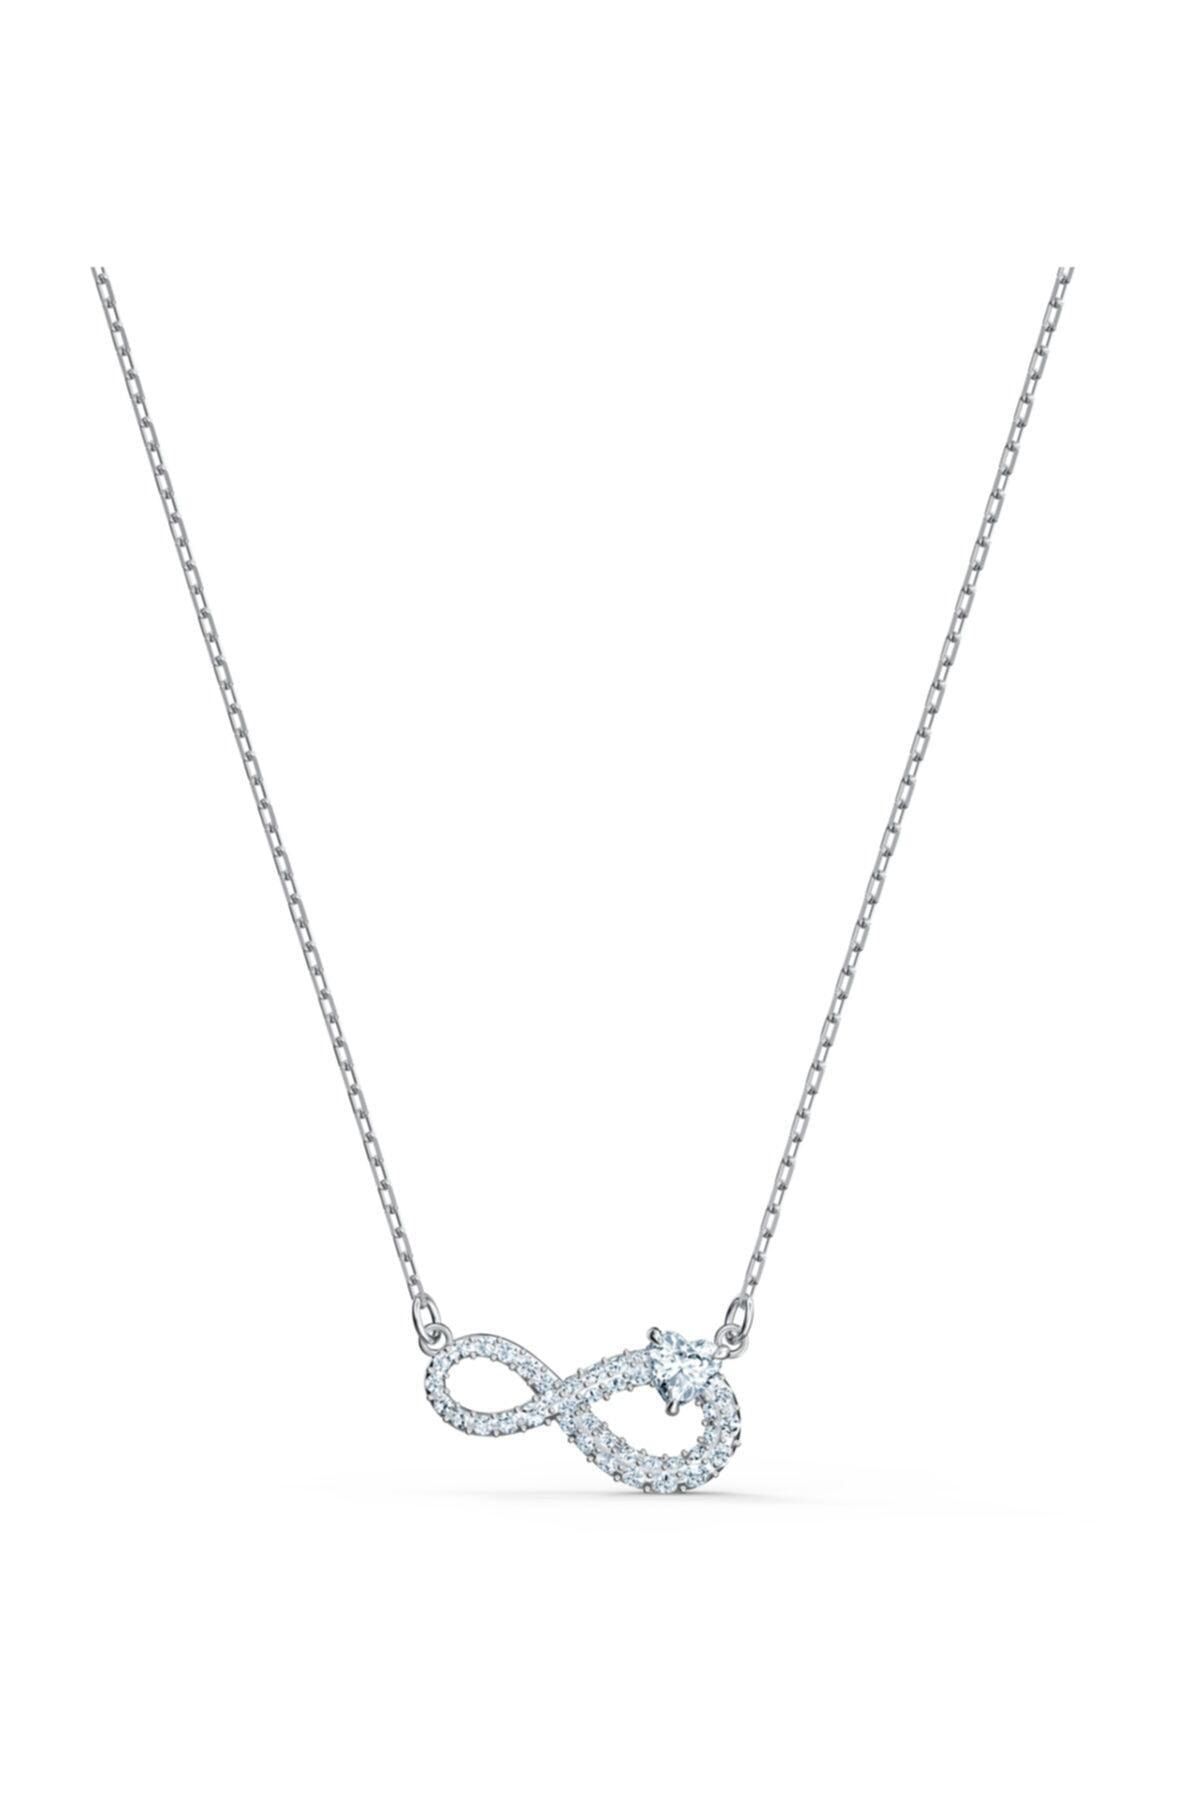 Swarovski Kolye Swa Infinity-necklace H Cry-czwh-rhs 5520576